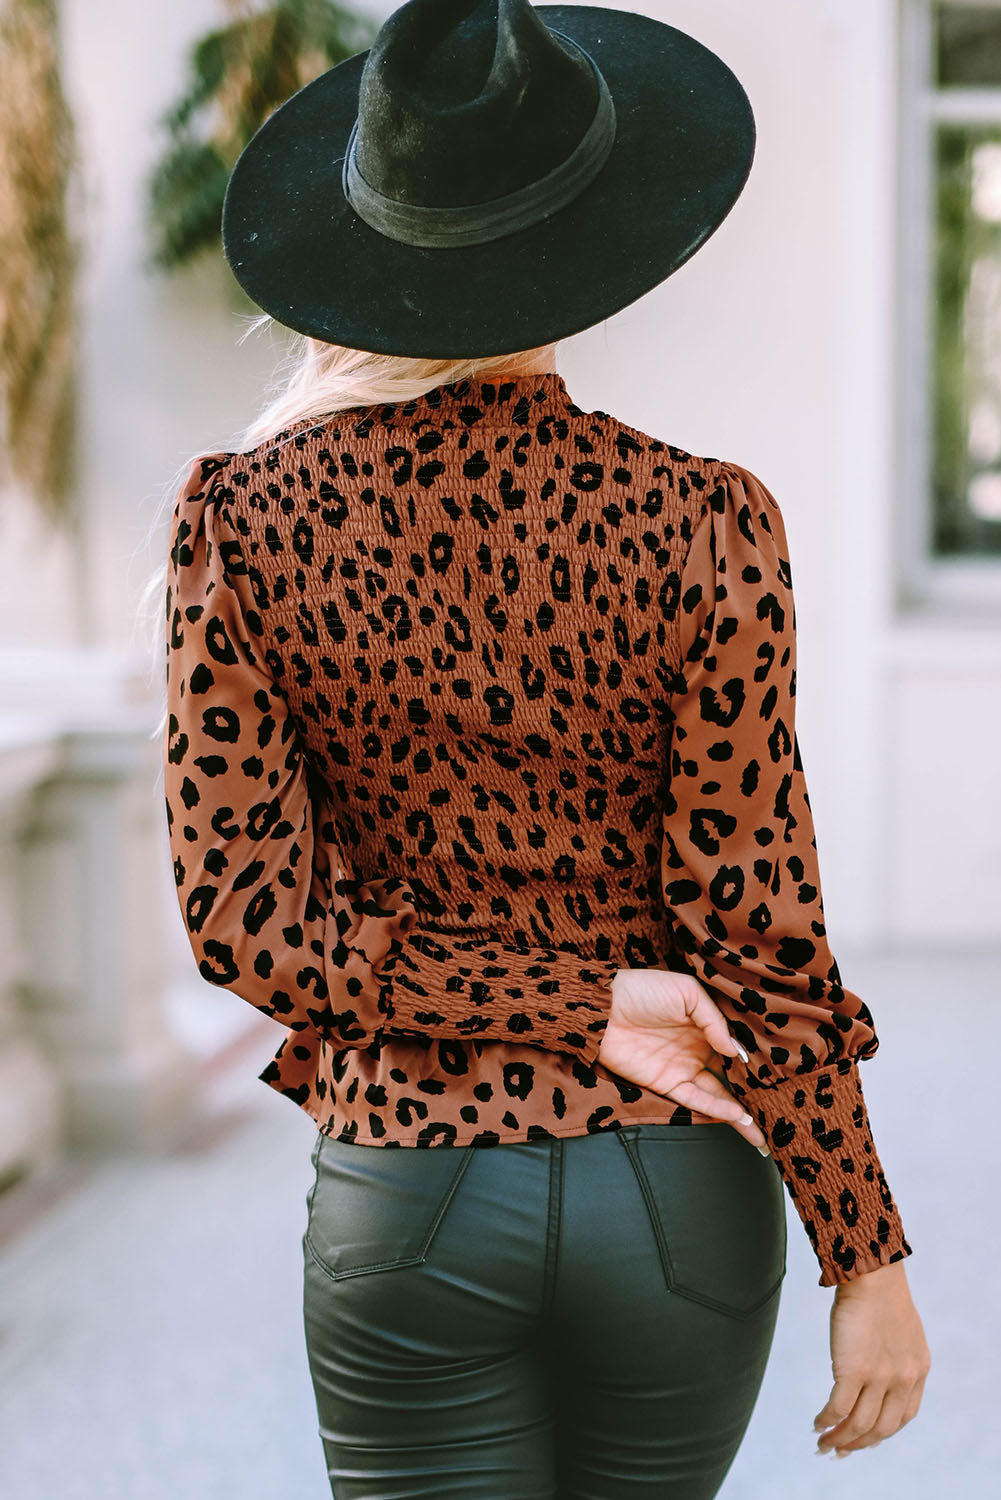 Rjava majica z napihnjenimi rokavi v obliki leoparda in peplum